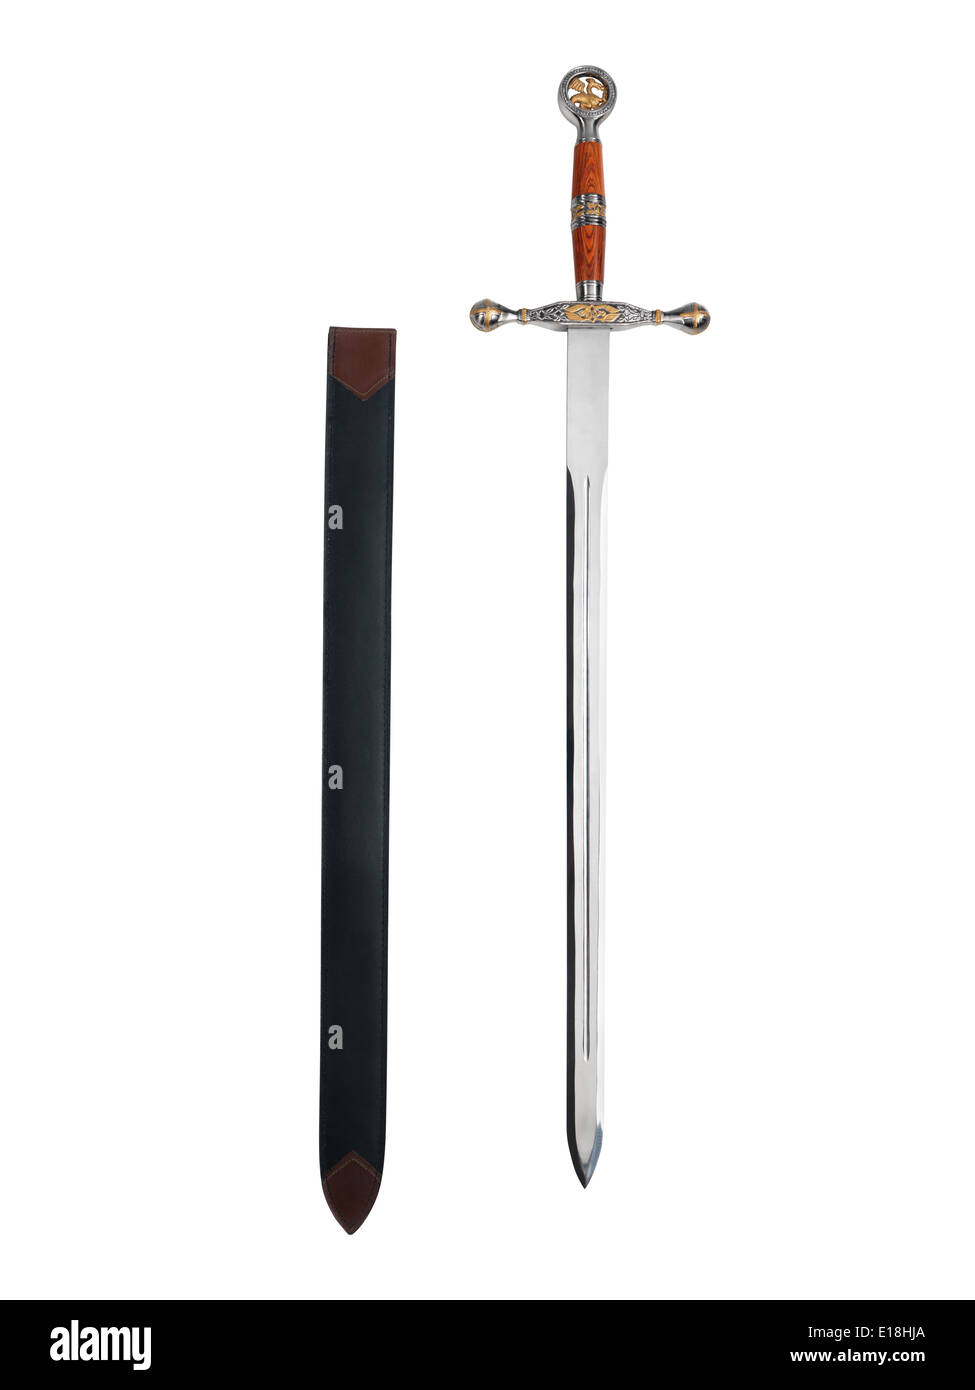 Fantasy sword et la gaine isolé sur fond blanc avec clipping path Banque D'Images